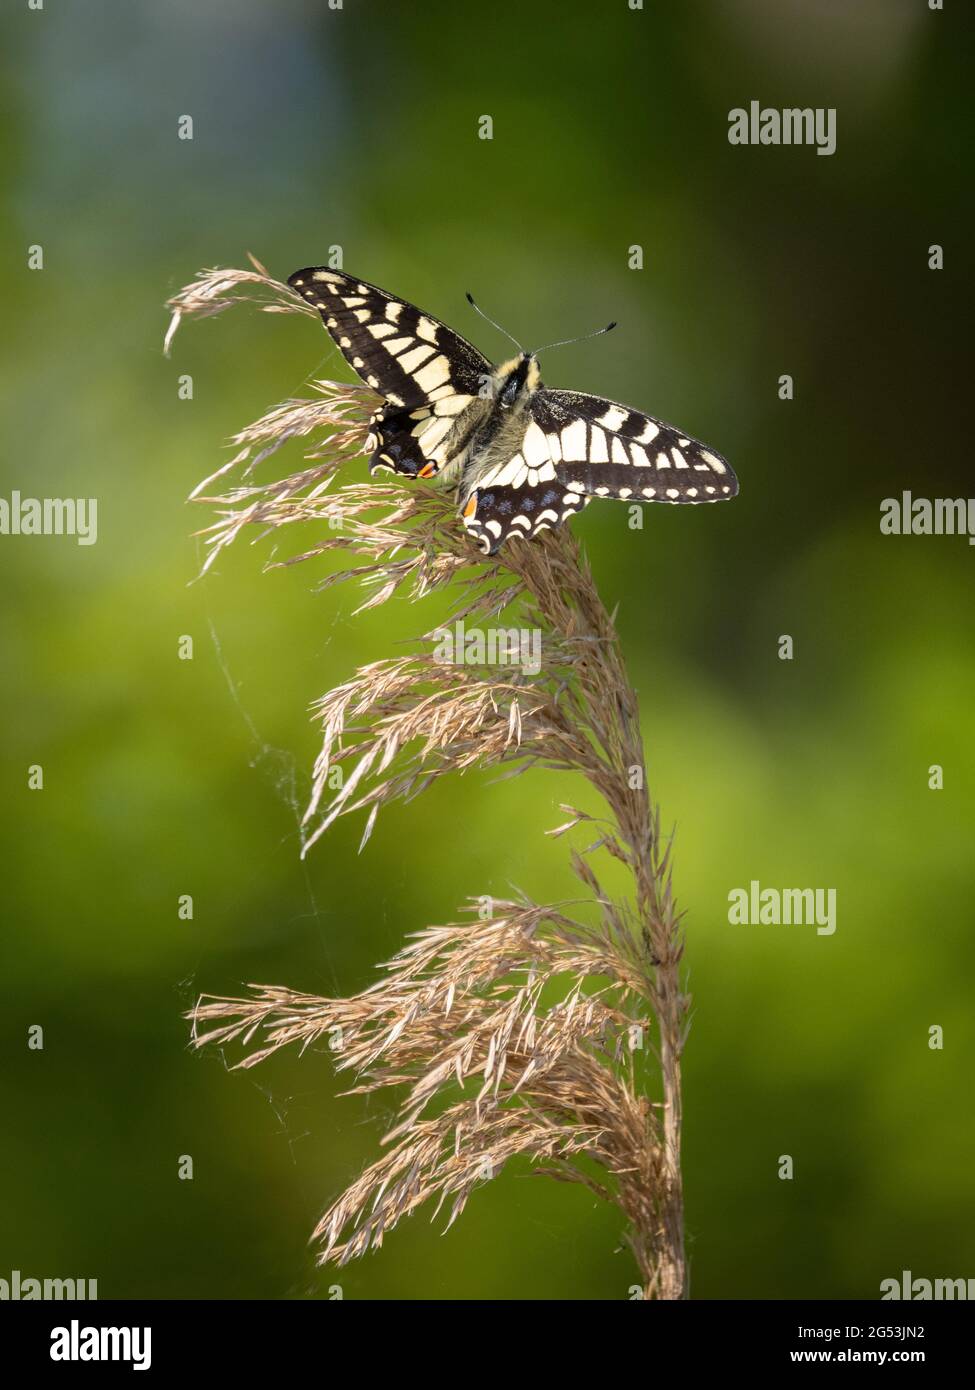 Nouveau papillon à queue d'aronde Papilio machaon Britannicus en vol inaugural à Hickling Broad, dans le Norfolk, au Royaume-Uni Banque D'Images